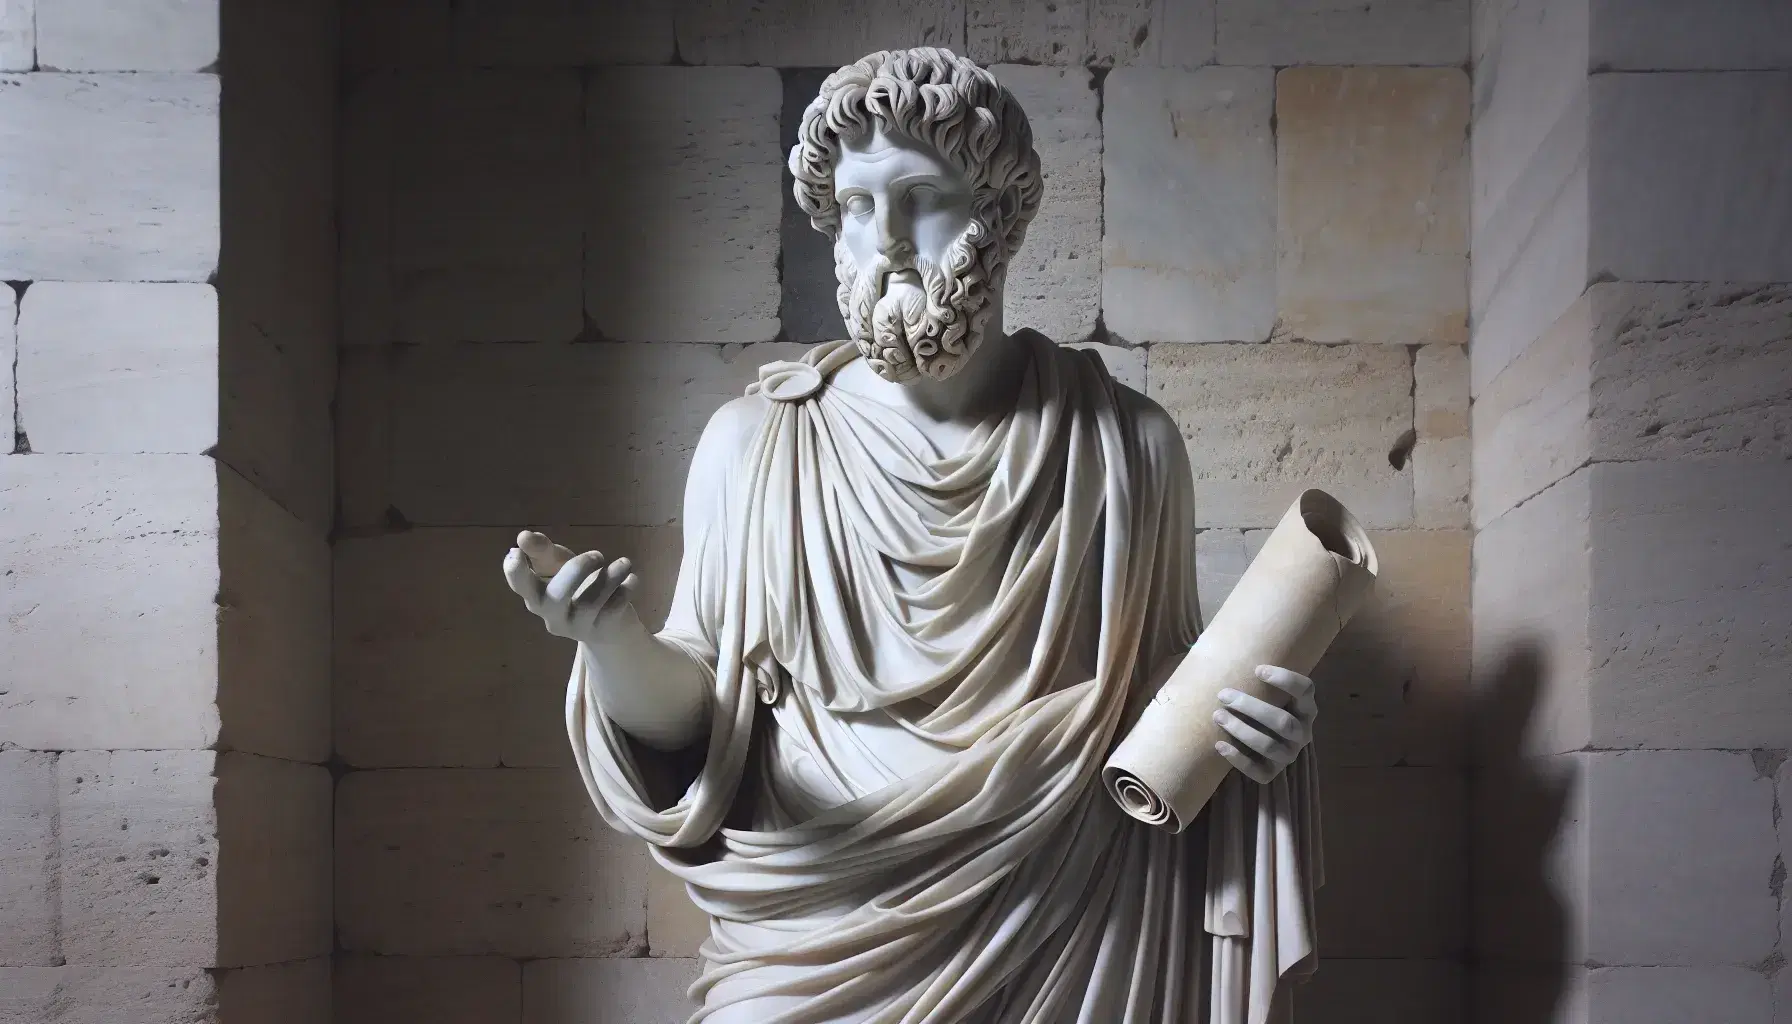 Estatua de mármol blanco de poeta griego antiguo, posiblemente Homero, en actitud de narración con túnica fluyente y detalles de cabello y barba rizados, sobre fondo de pared de piedra.